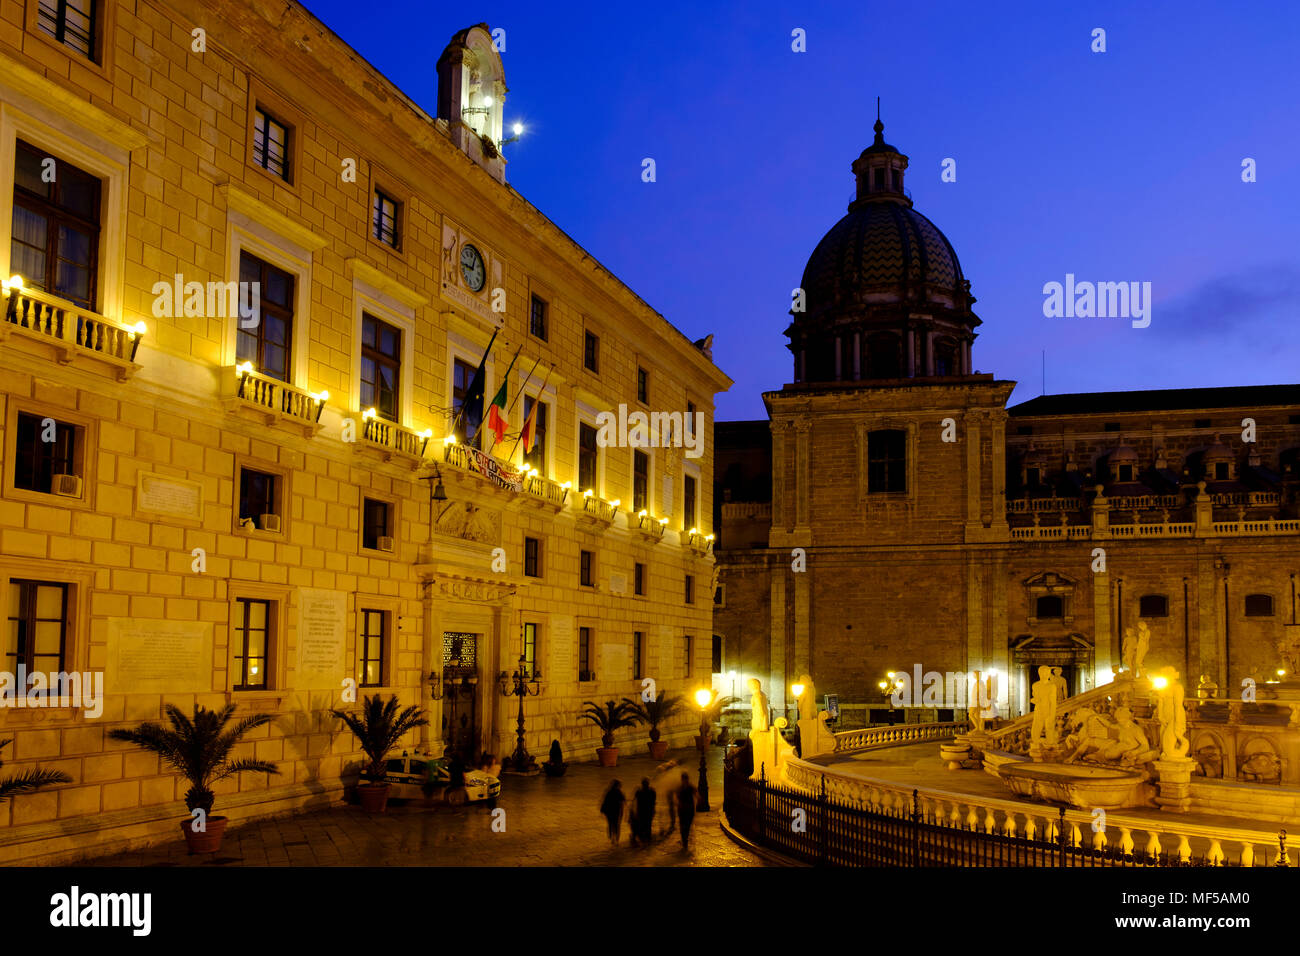 Fontana Pretoria, Palazzo Pretorio mit und San Giuseppe dei Teatini in der Dämmerung, la Piazza Pretoria, Palermo, sicilia, Italie Banque D'Images